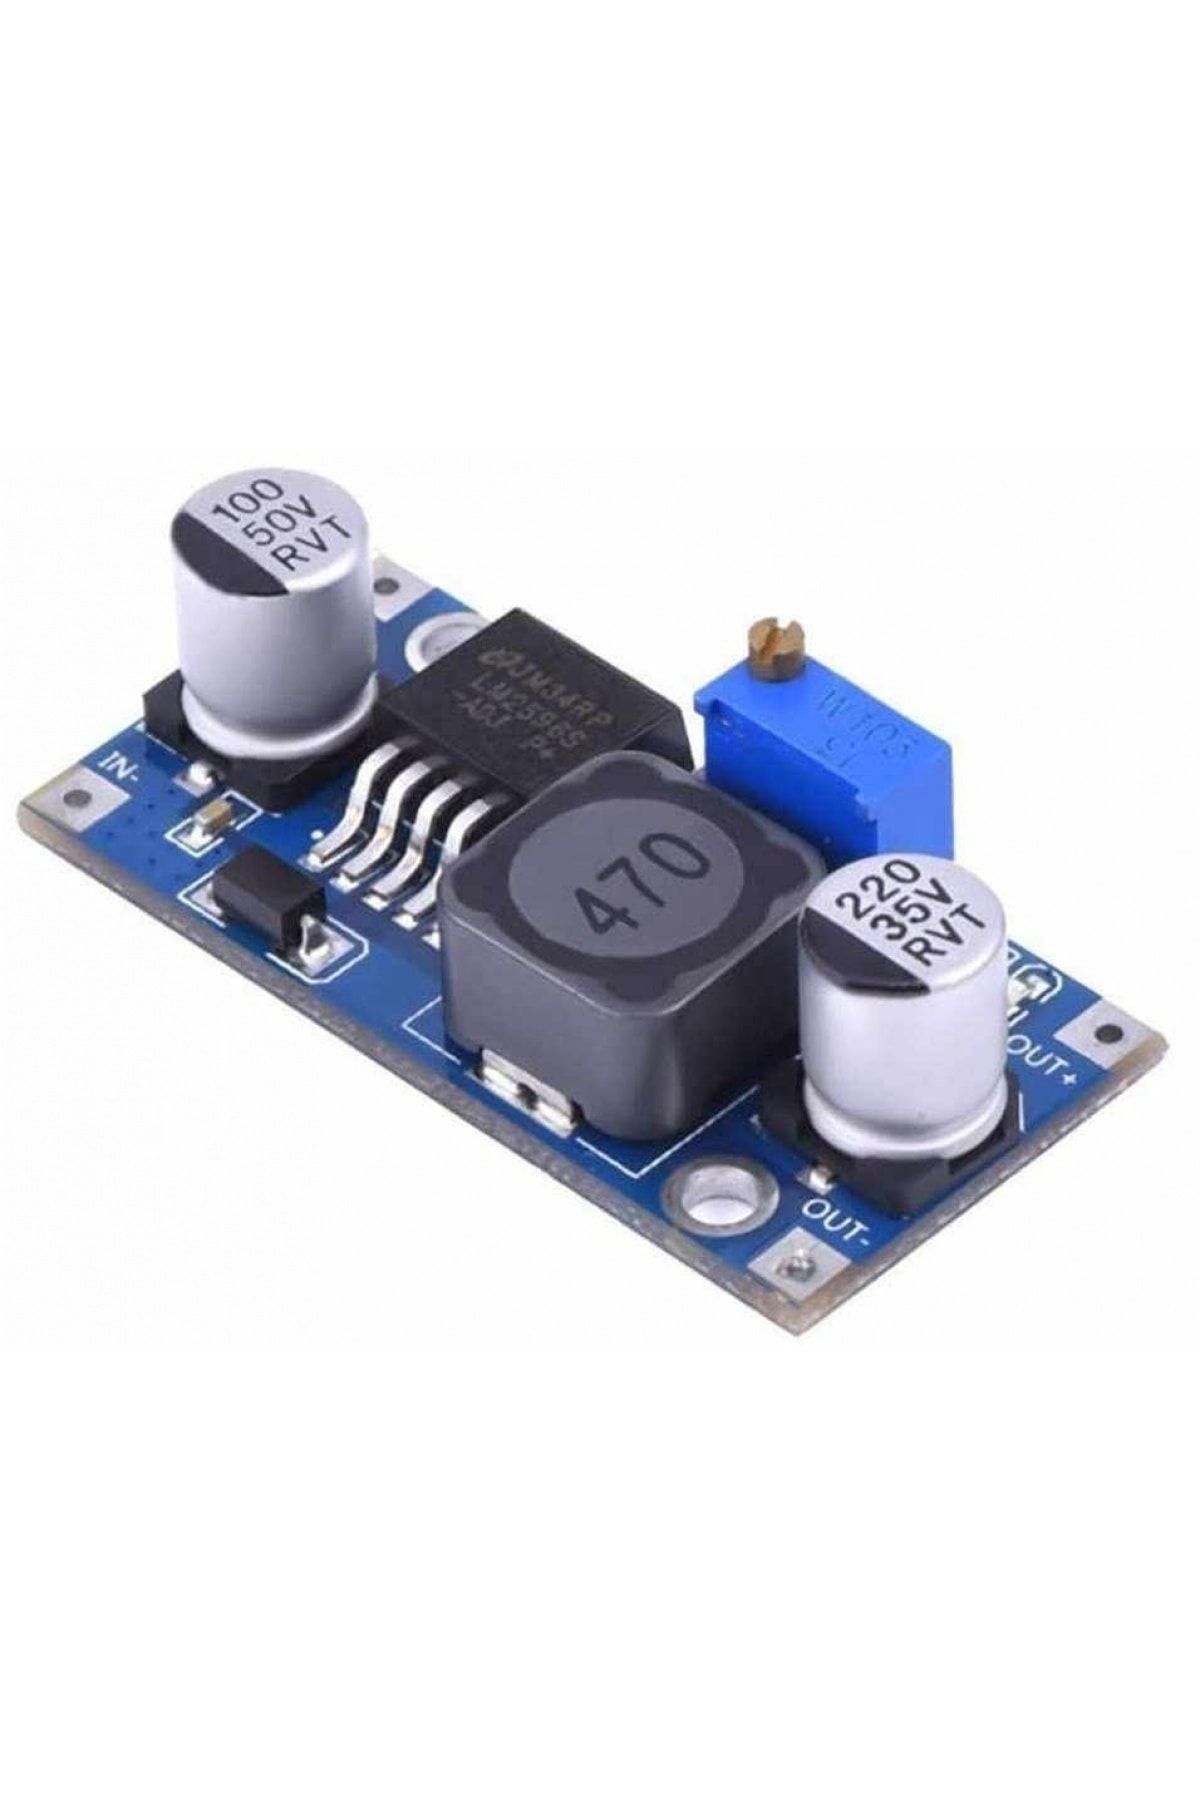 Rox Mini Ayarlanabilir 3 A Voltaj Regülatör Kartı - Lm2596-adj